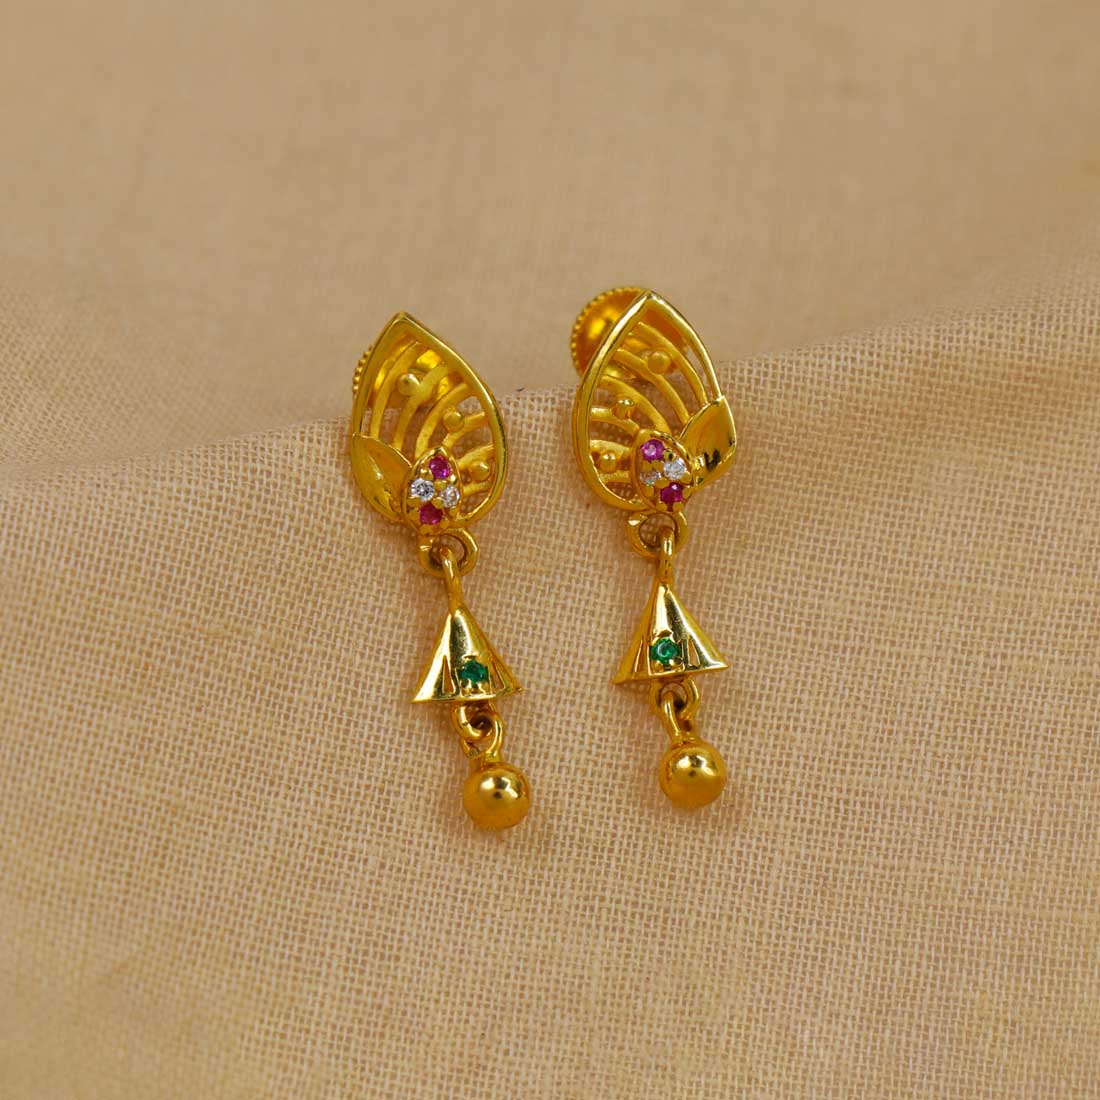 Gold Spike Drop Earrings by Jane Diaz - NEWTWIST